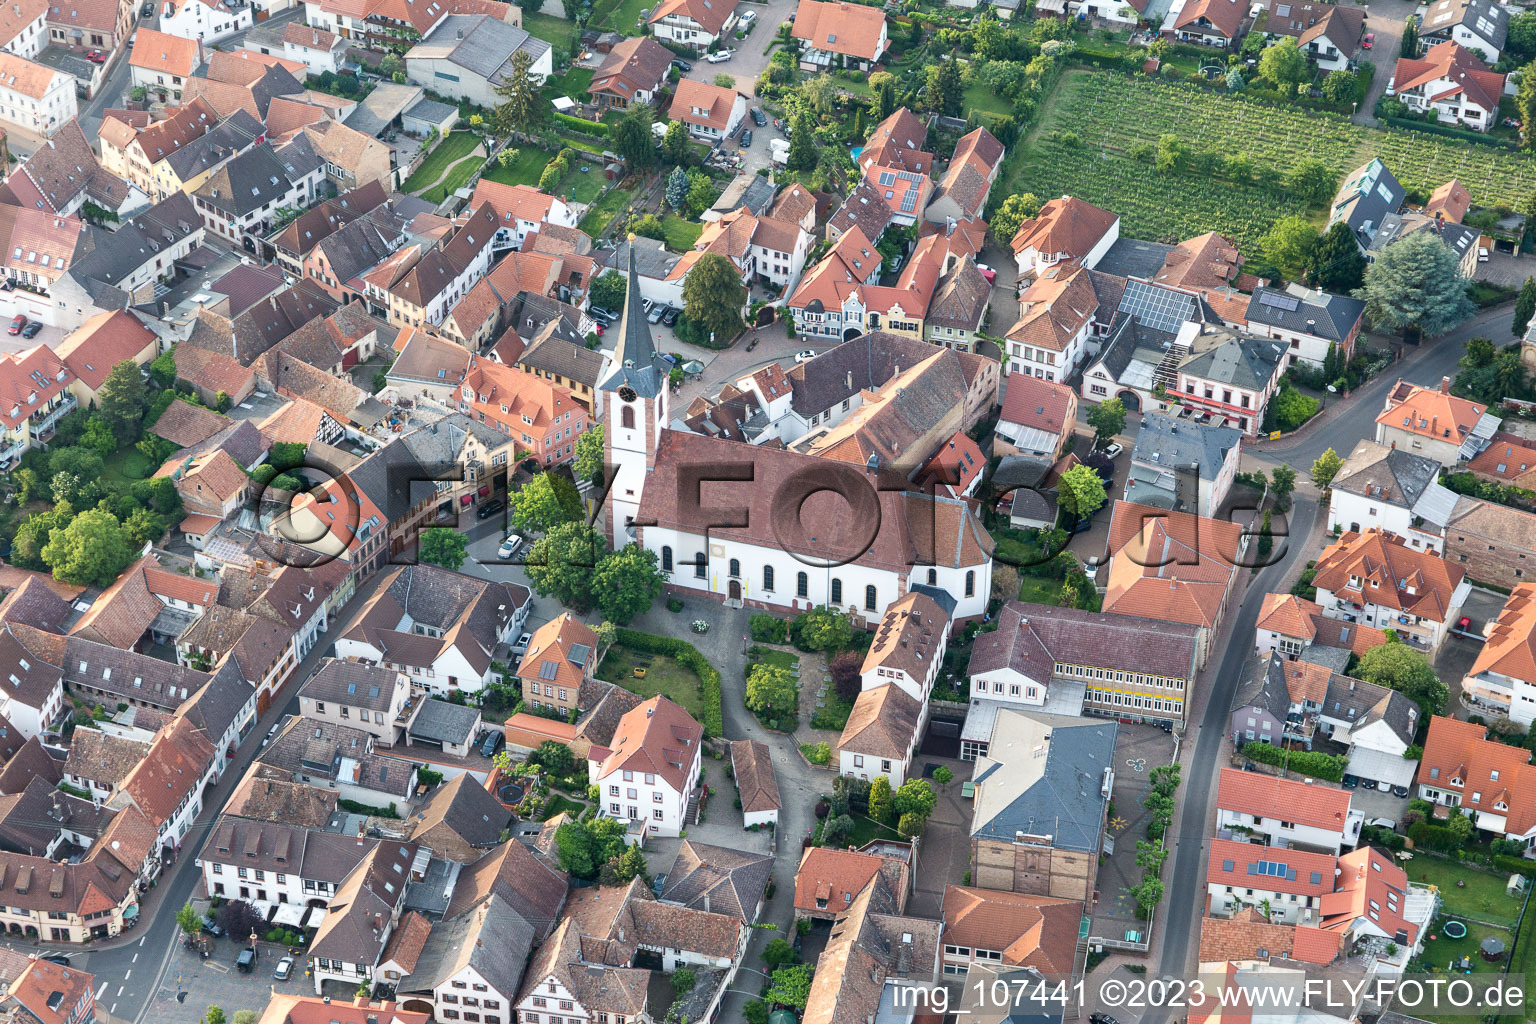 Maikammer im Bundesland Rheinland-Pfalz, Deutschland von der Drohne aus gesehen